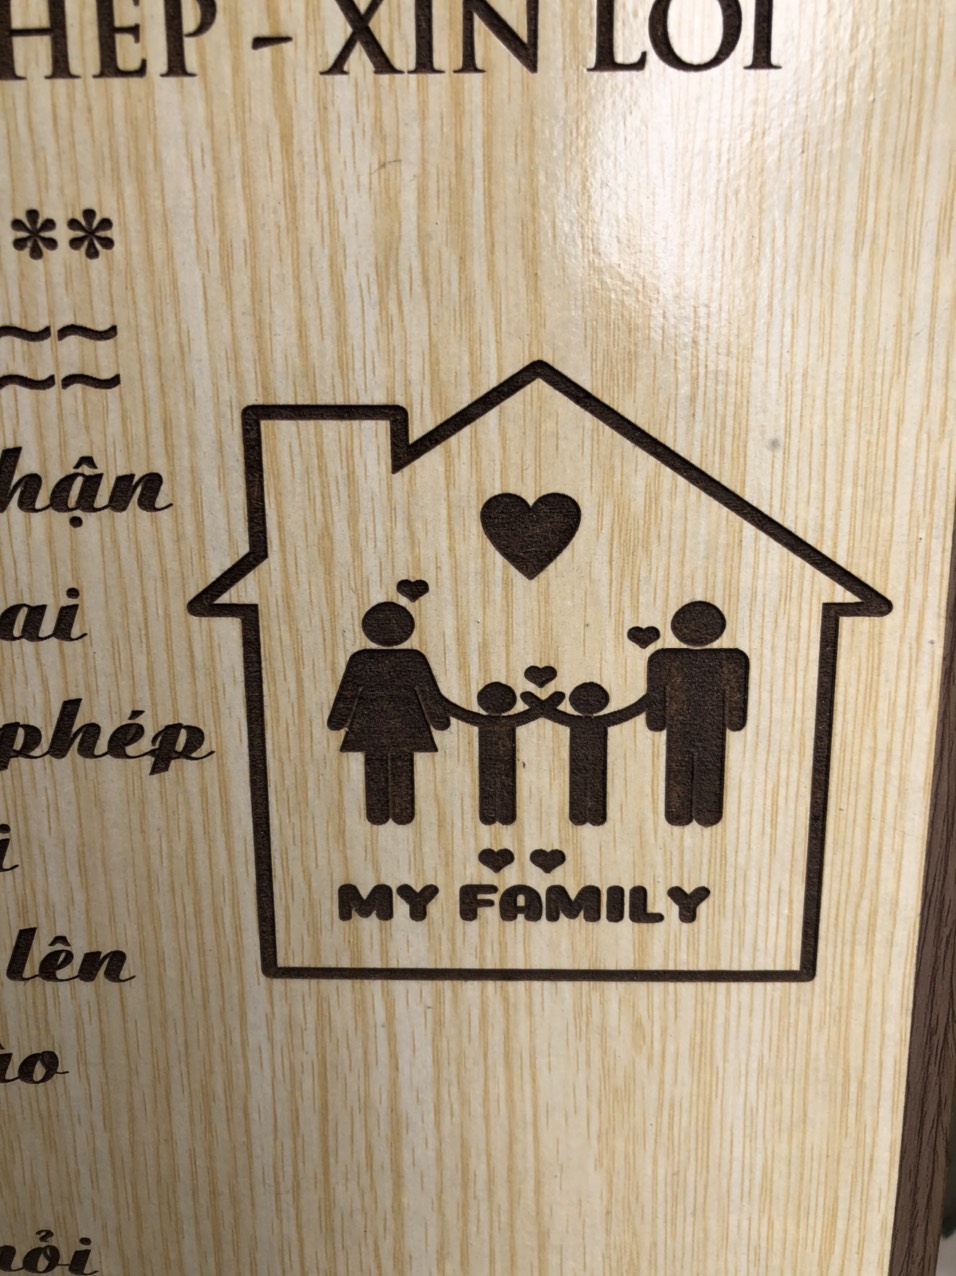 15 Nội quy gỗ cho gia đình - Quy tắc gia đình gỗ